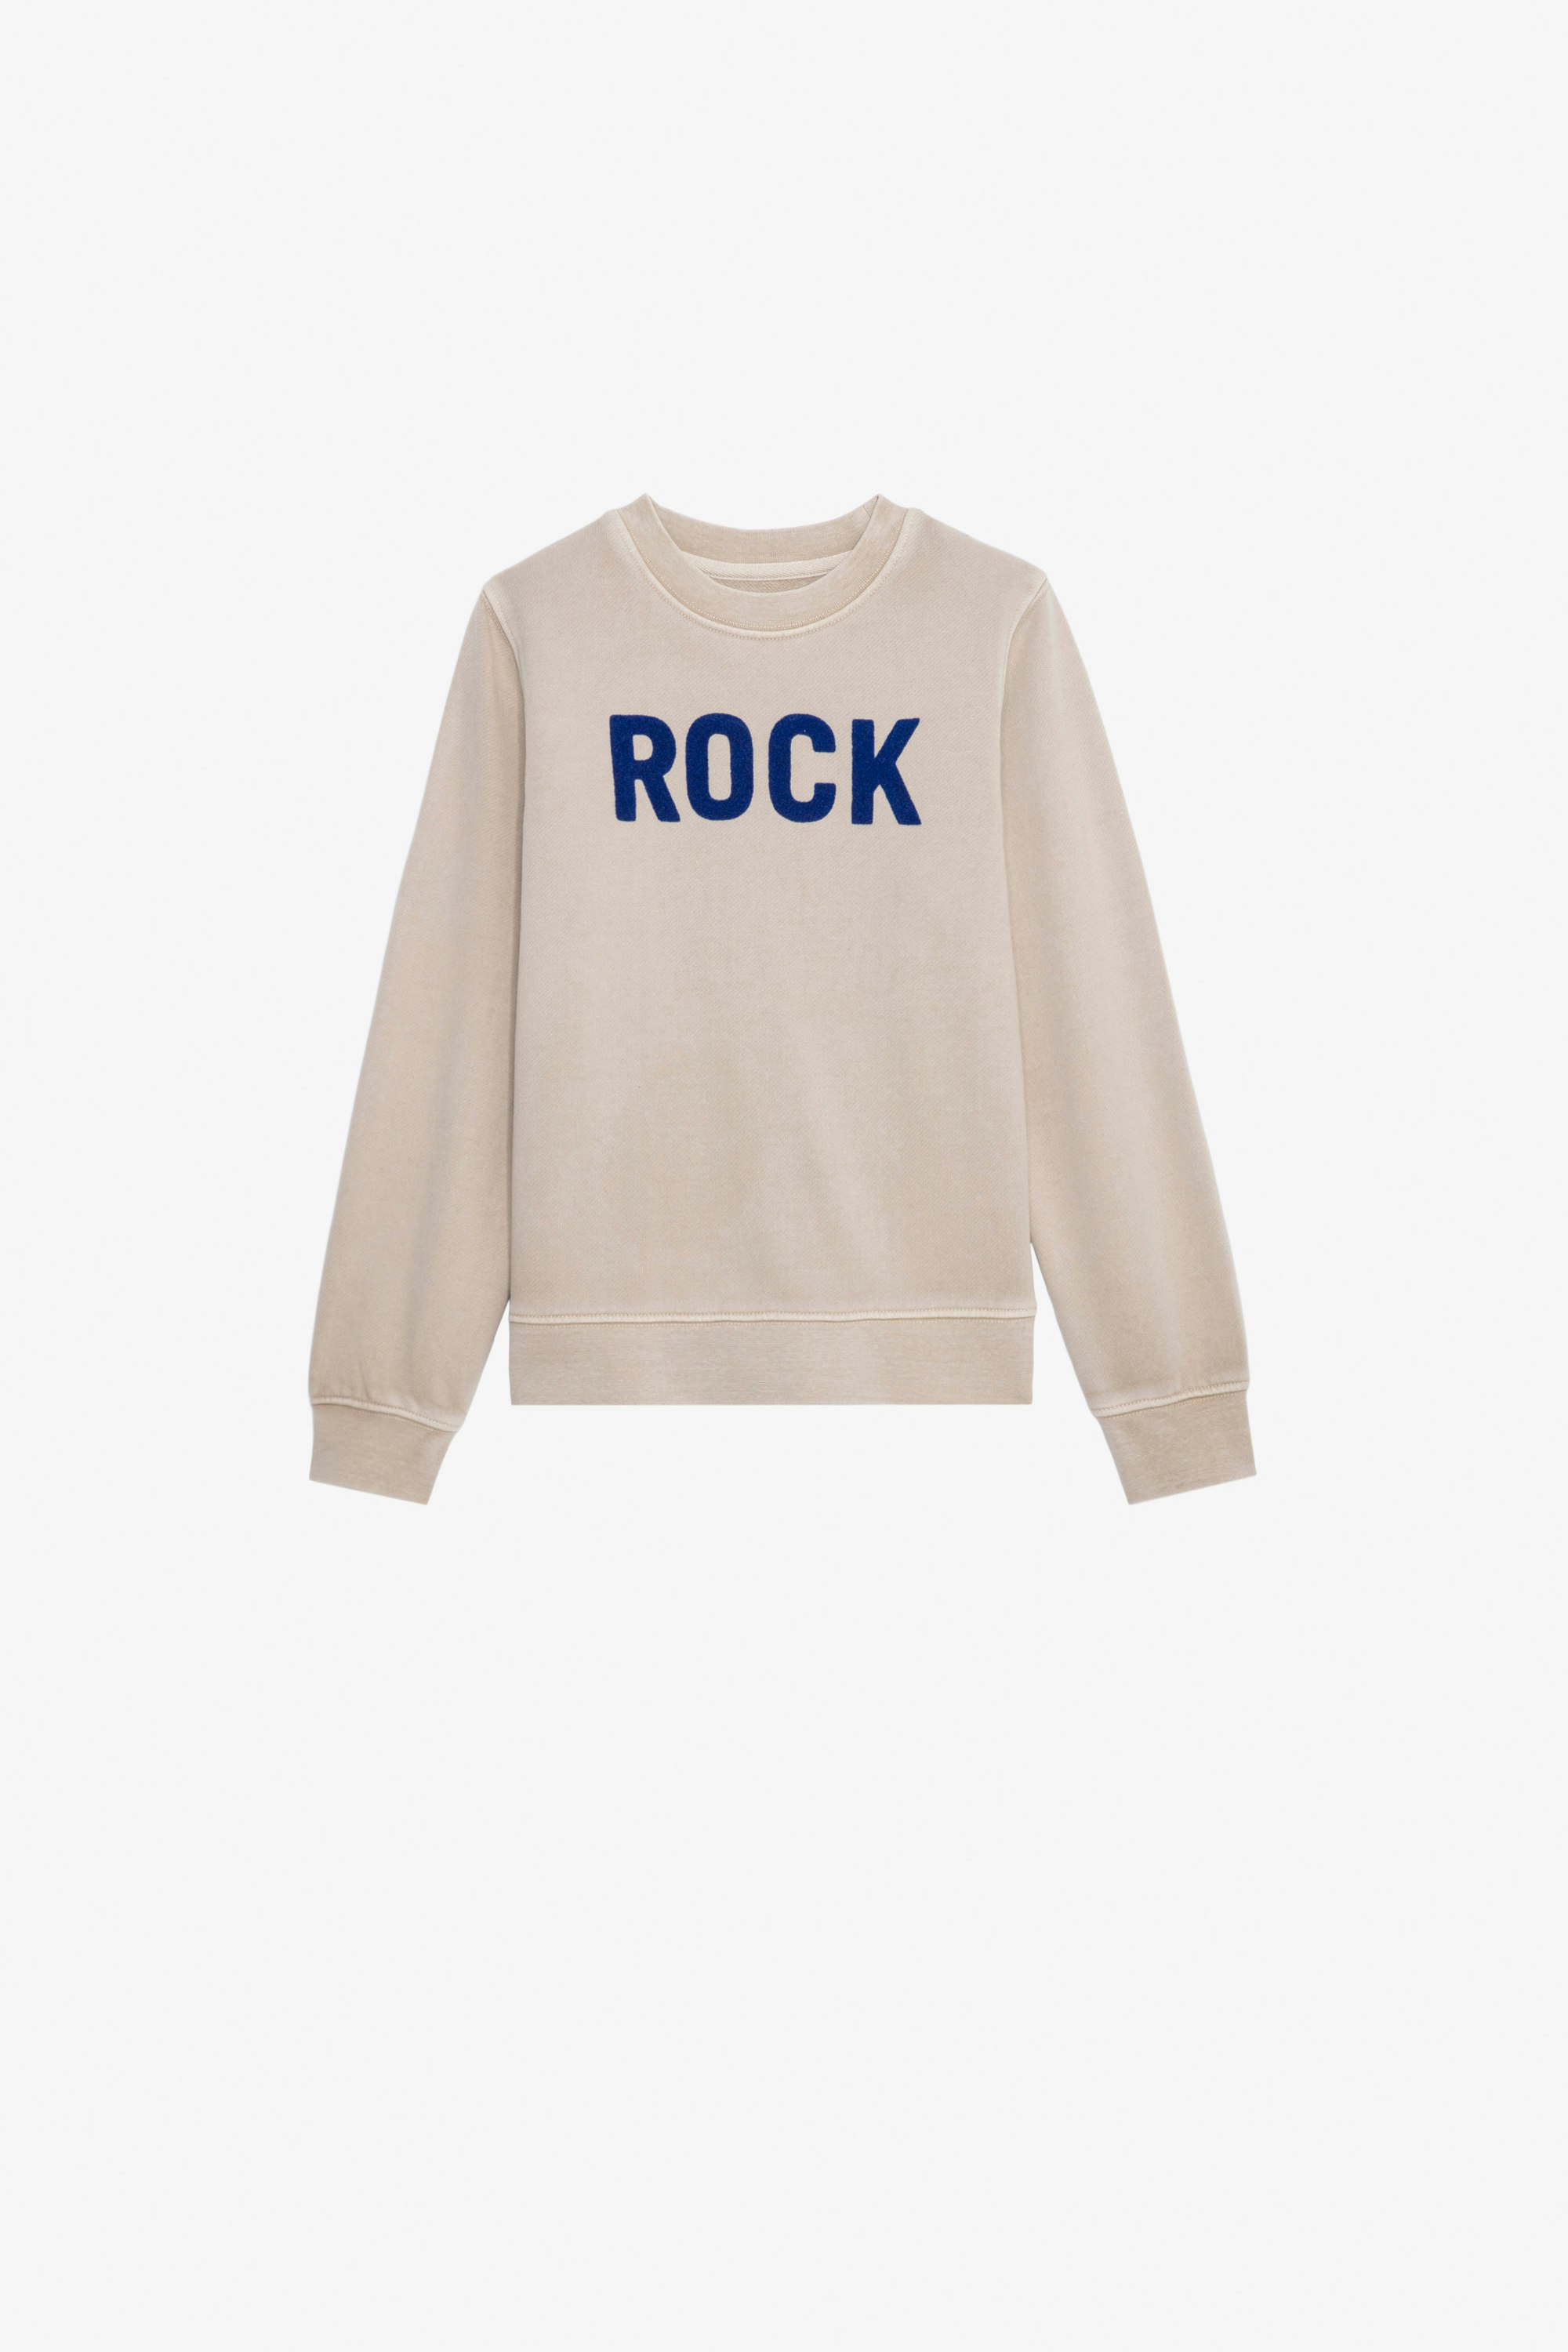 Sweatshirt Simba für Jungen Sweatshirt aus Baumwolle mit Molton-Futter in Beige mit dem Schriftzug „Rock“ für Jungen.